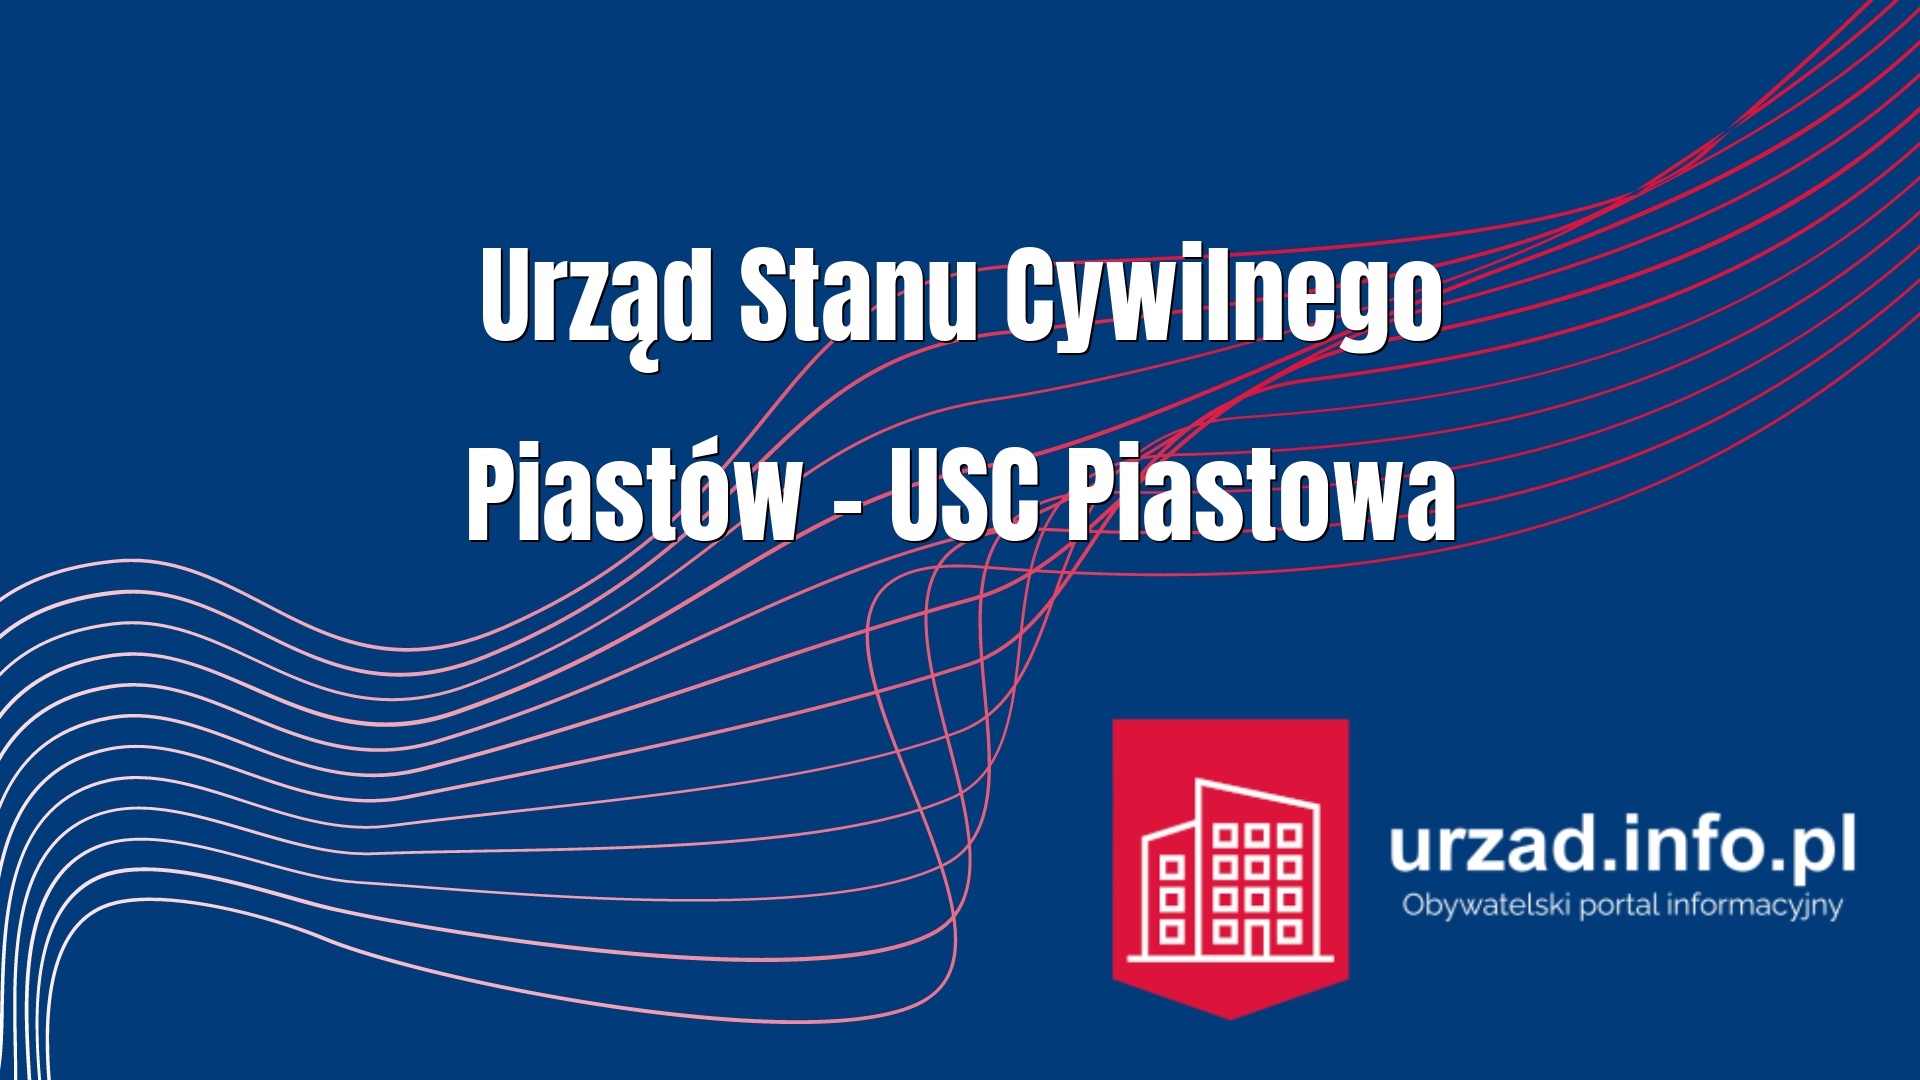 Urząd Stanu Cywilnego Piastów – USC Piastowa